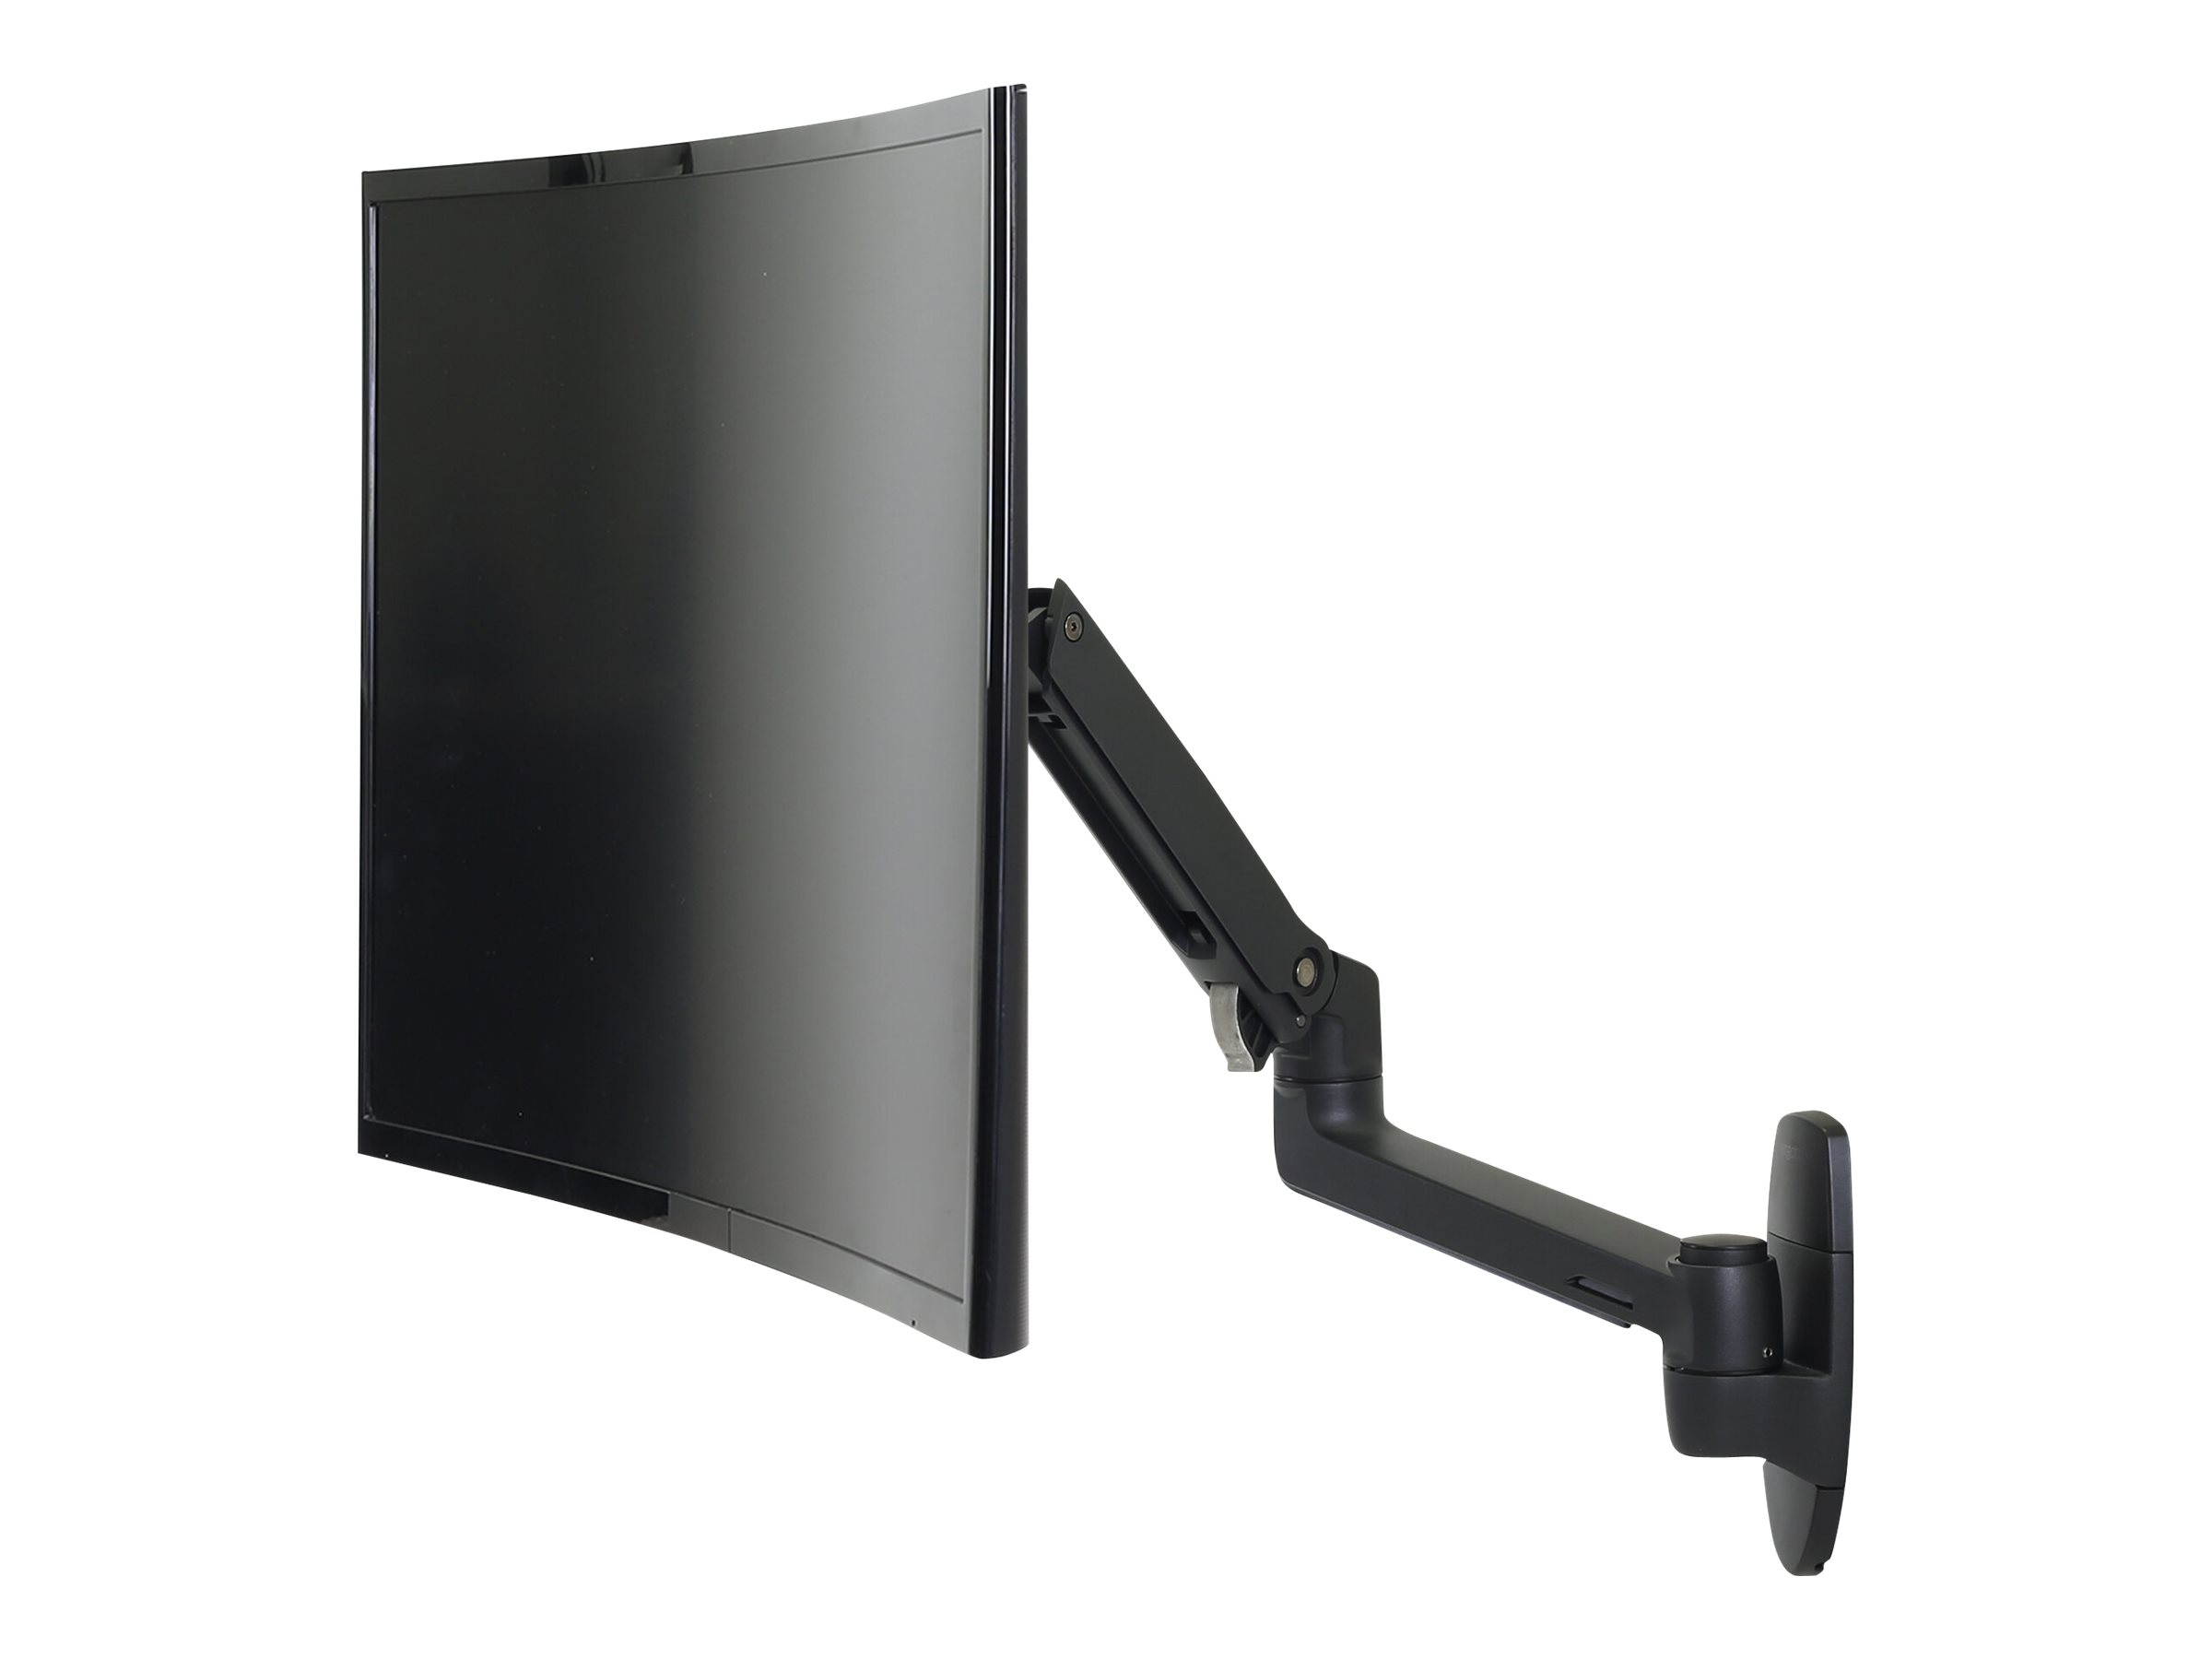 Ergotron LX - Befestigungskit (Gelenkarm, Erweiterungsadapter, Wandhalterung) - für LCD-Display - mattschwarz - Bildschirmgröße: bis zu 86,4 cm (bis zu 34 Zoll)